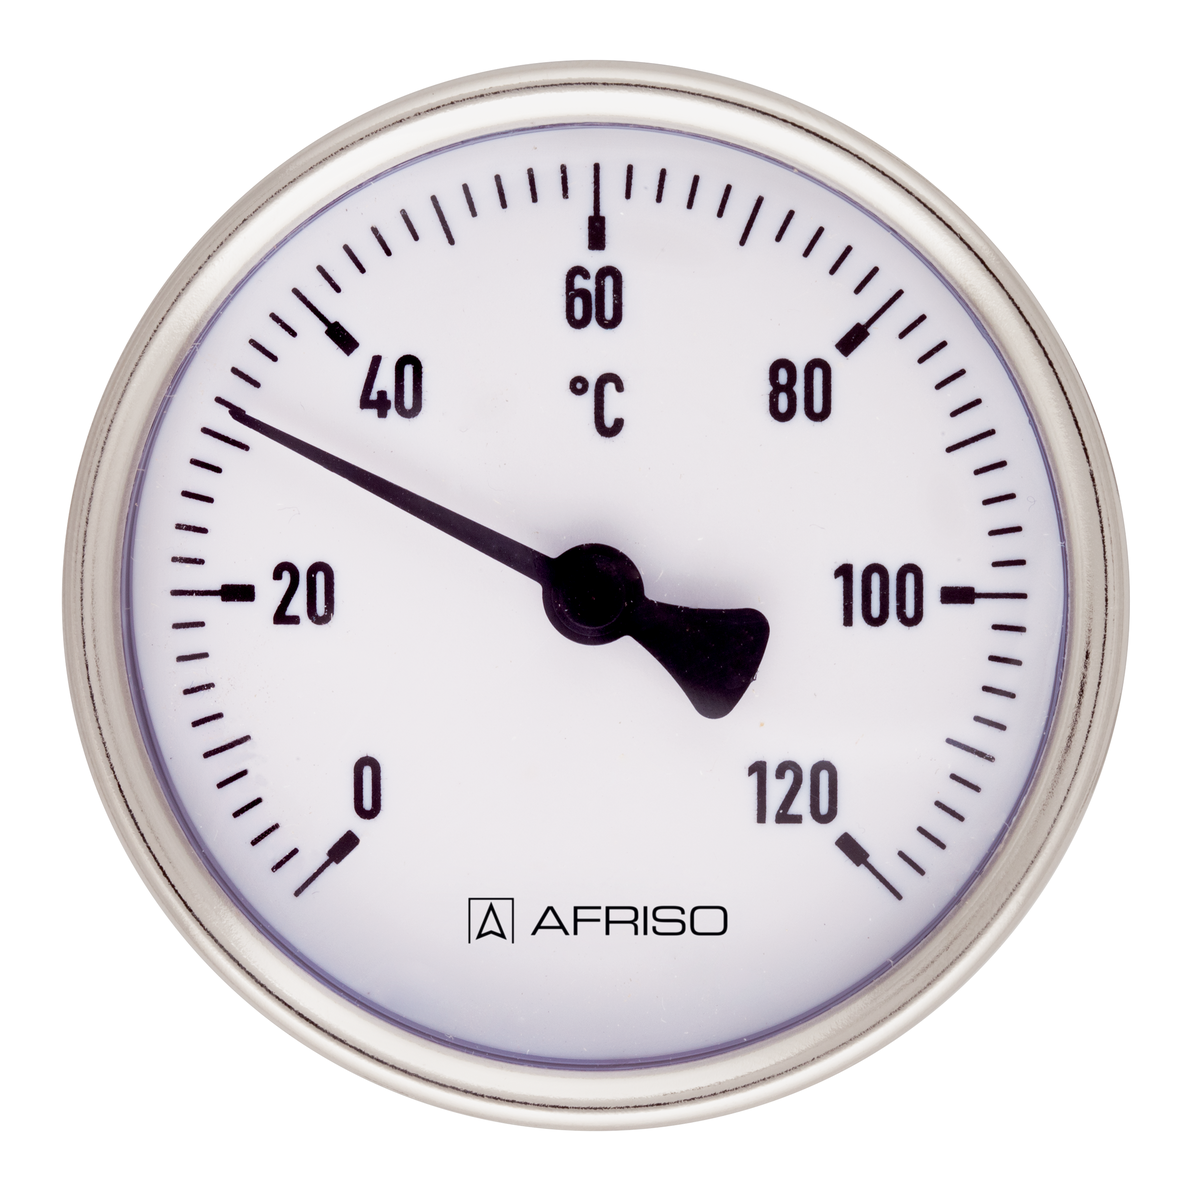 Bimetalový teploměr BiTh 50 ST, Ø 50 mm, 0 ÷ 60 °C, délka jímky 150 mm, G½", axiální - AFRISO.CZ